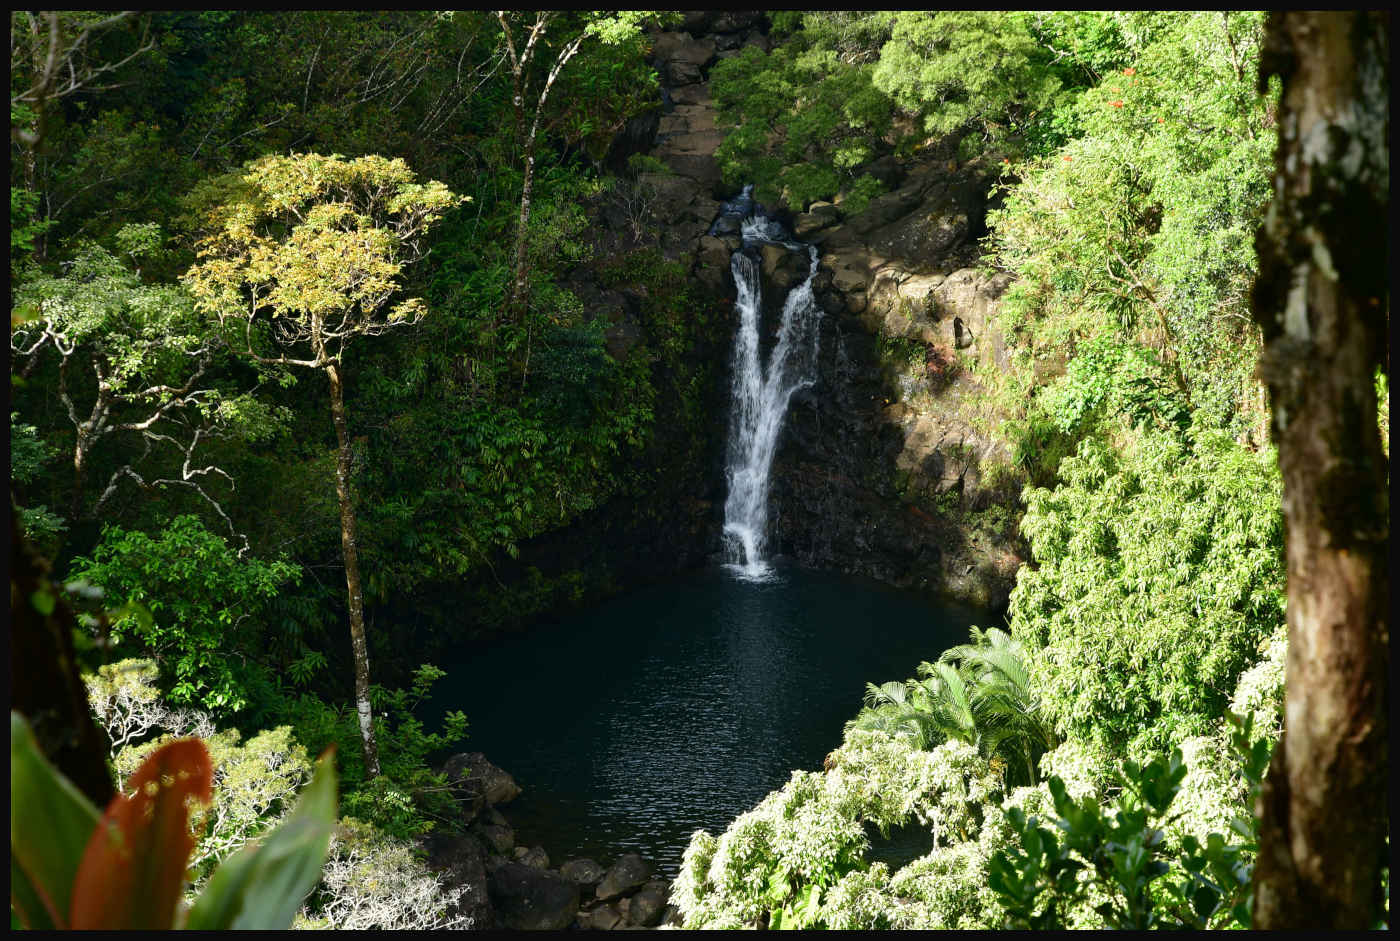 Puohokamoa Falls & Pool